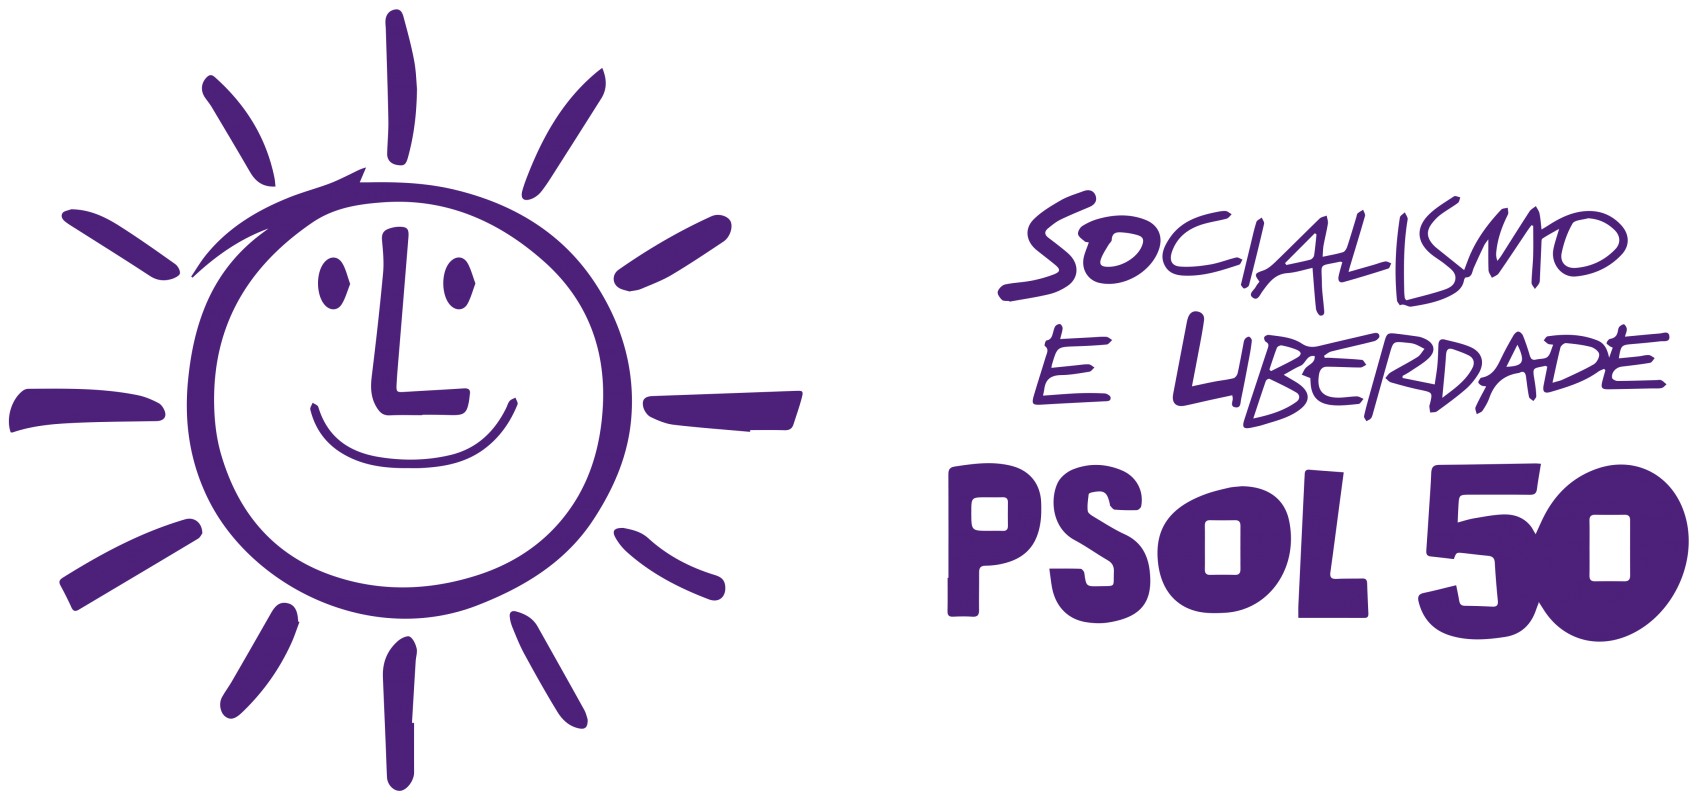 Socialismo e Liberdade - PSOL 50